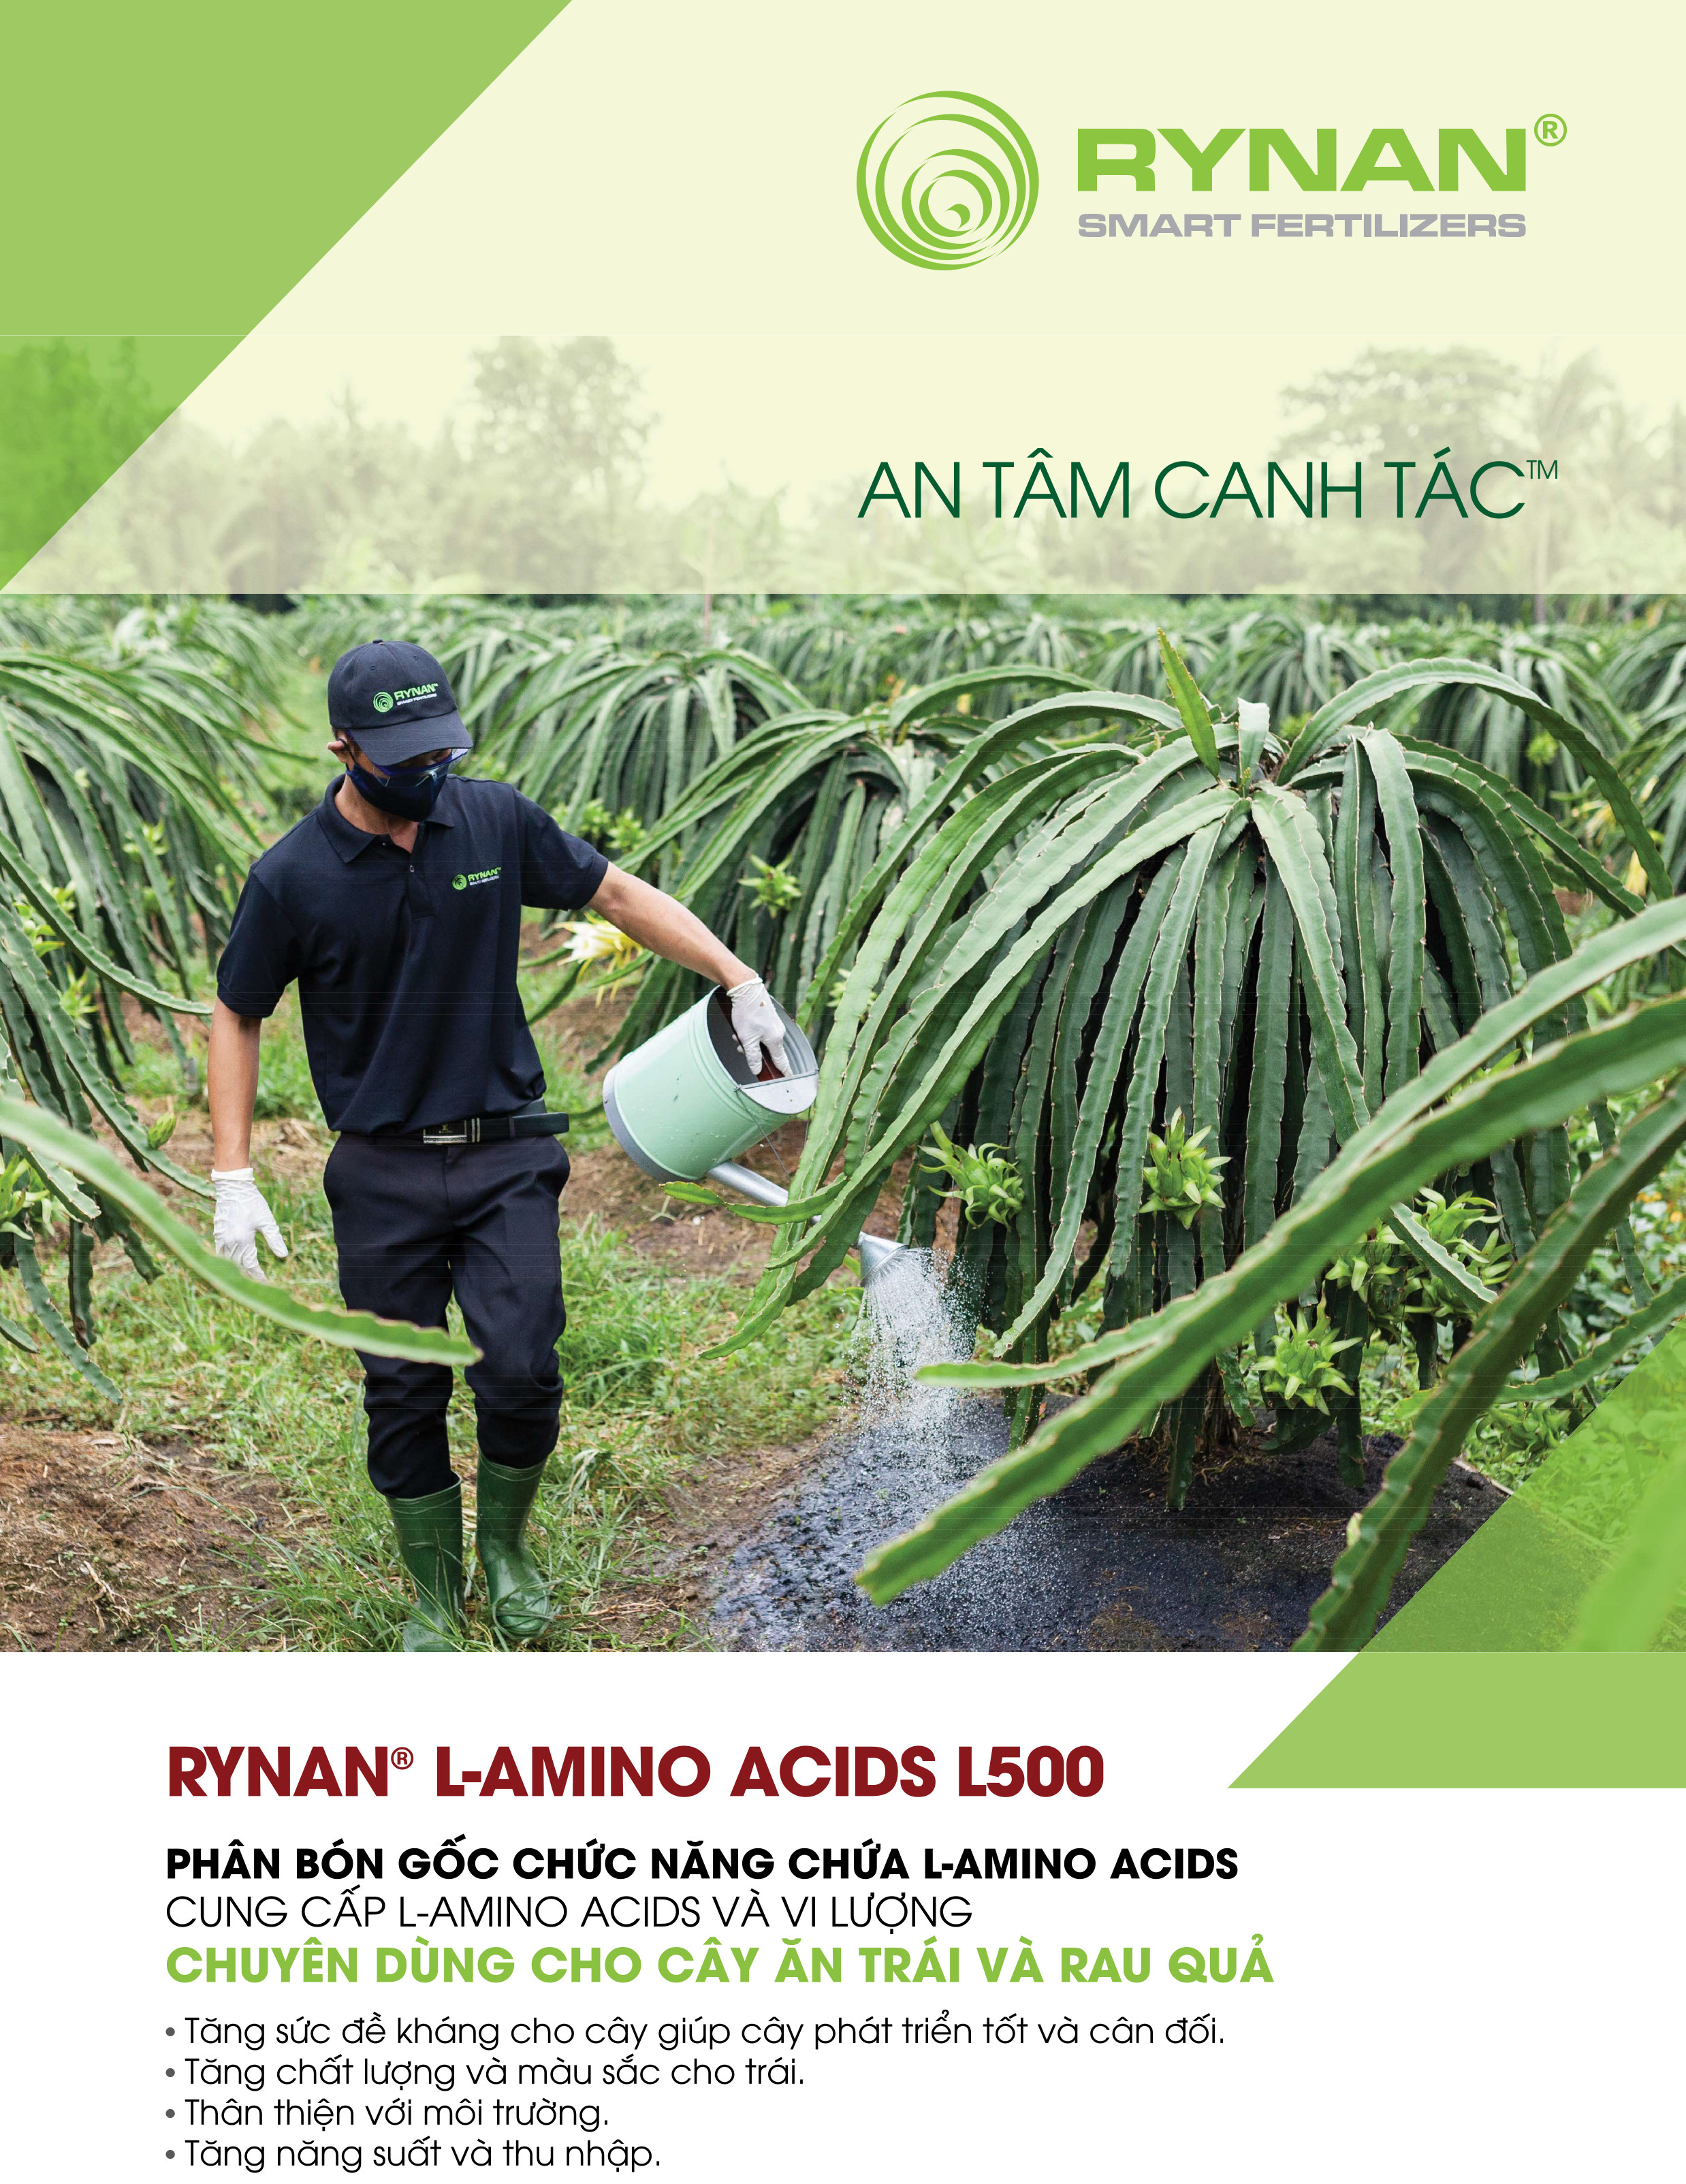 Phân bón gốc Rynan L-Amino Acids L500 (chai 120ml) - Kích thích rễ, tăng đề kháng, giải độc và hạ phèn cho đất